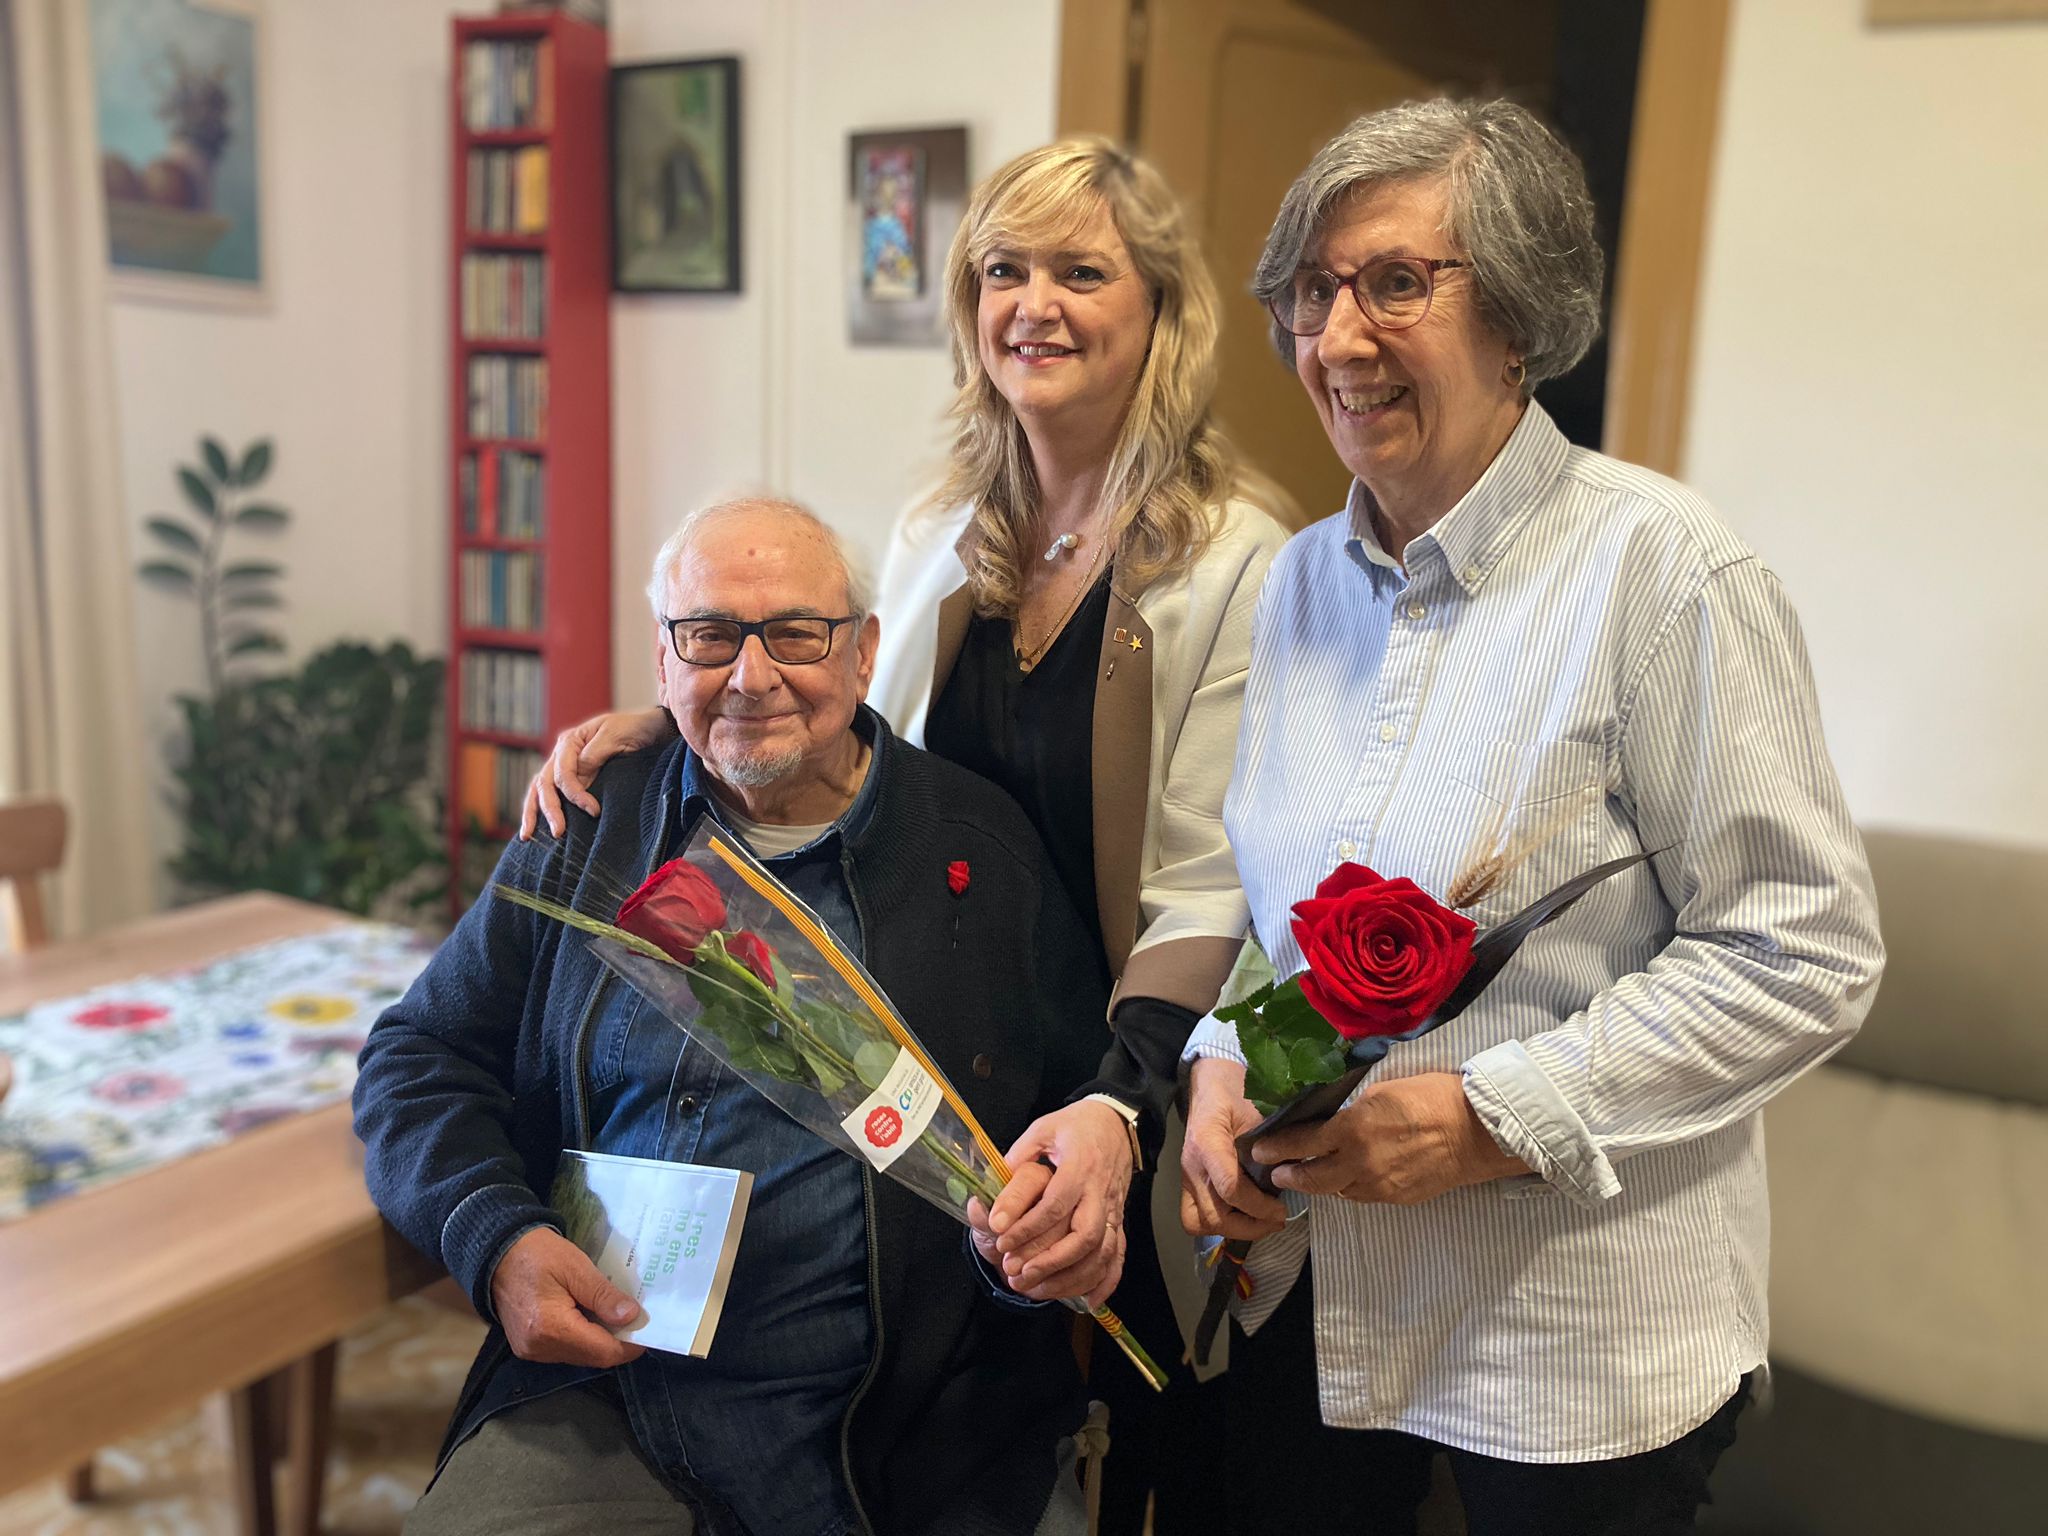 La consellera Cervera fa entrega d'una rosa solidària d'Amics de la Gent Gran